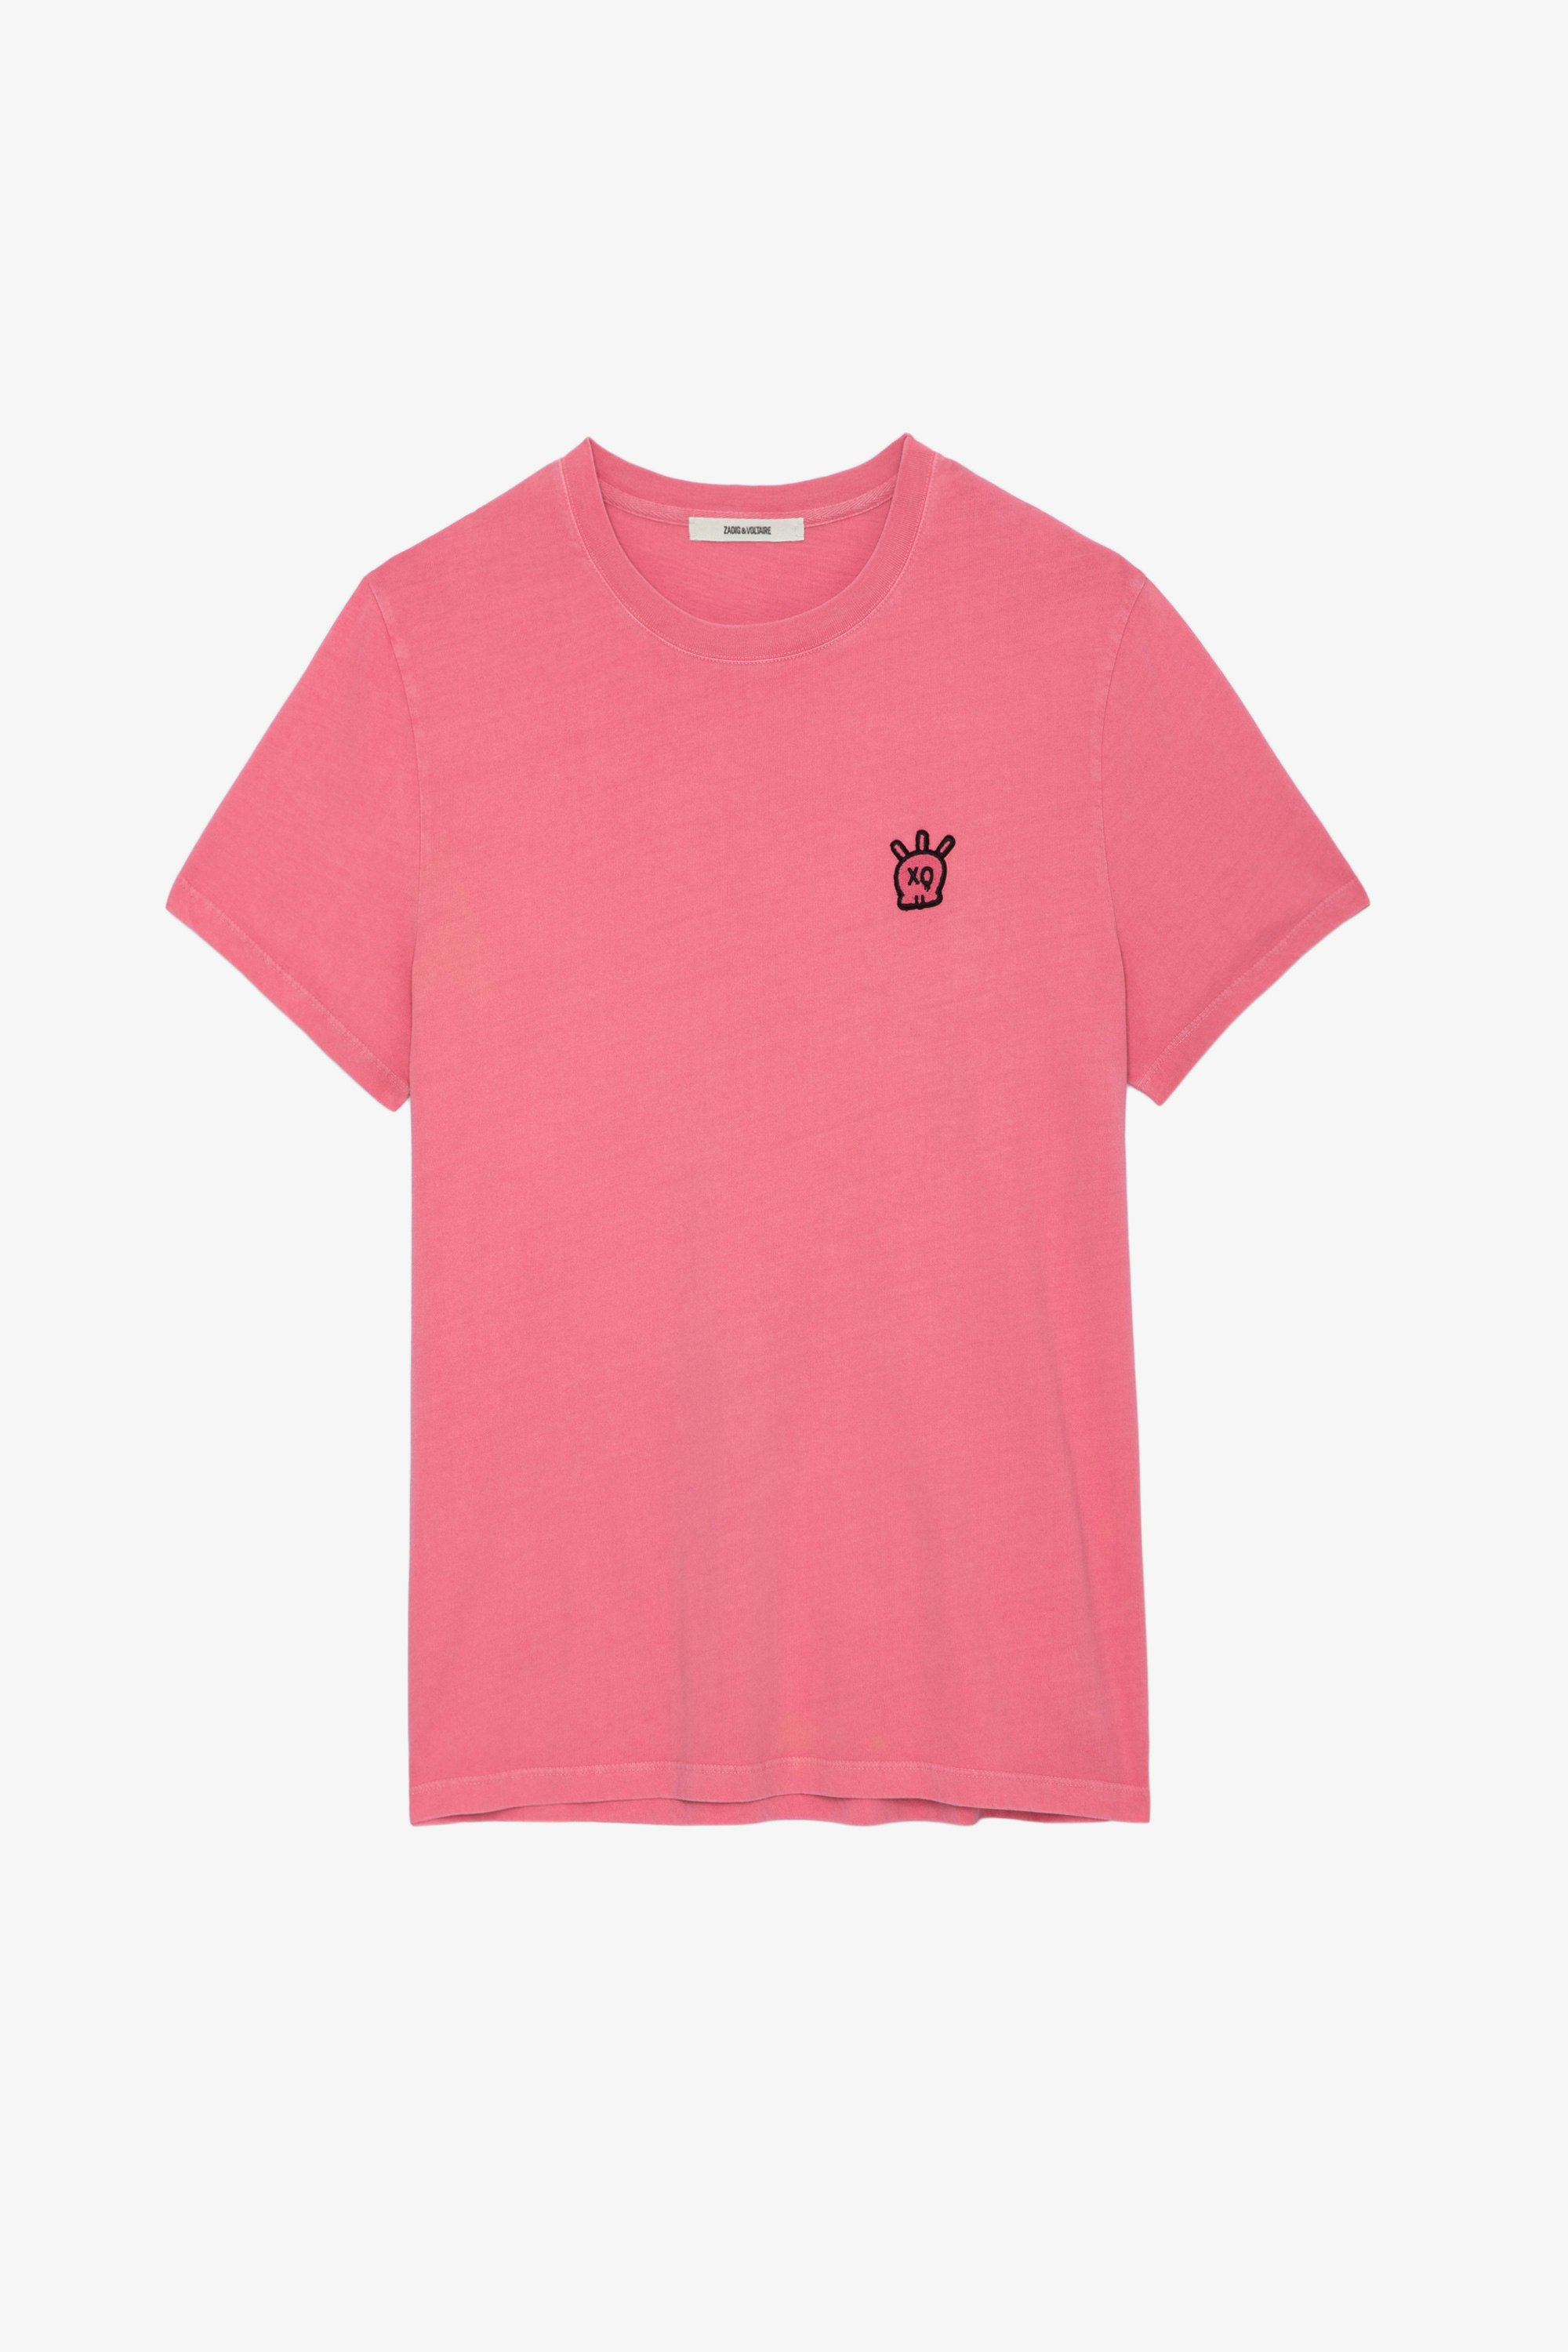 T-shirt Tommy Skull XO - T-shirt en coton rose à col rond, manches courtes et patch Skull XO.